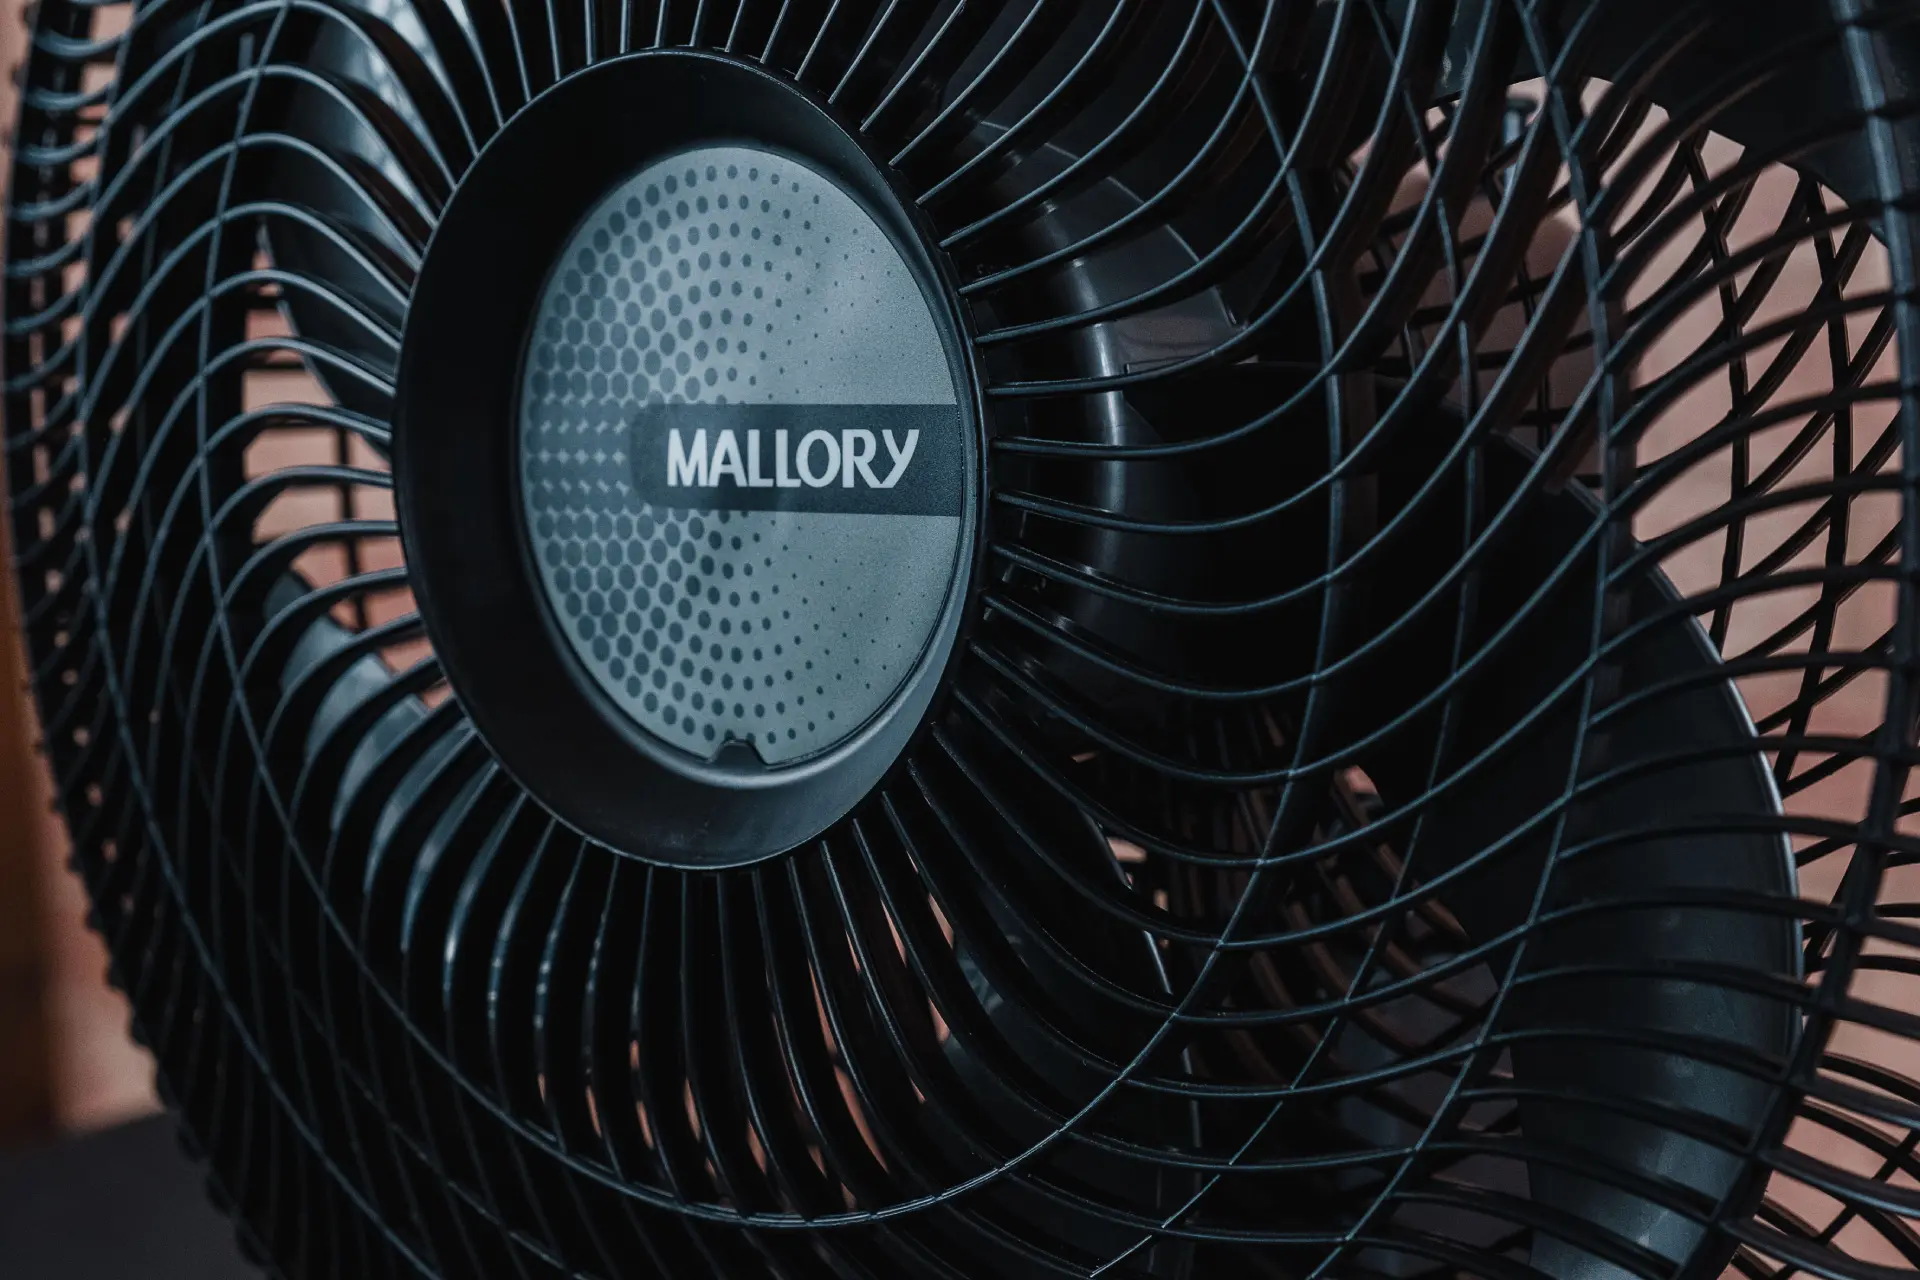 Close da grade preta do ventilador com o logo da marca no meio; a hélice do aparelho aparece ao fundo e é cinza